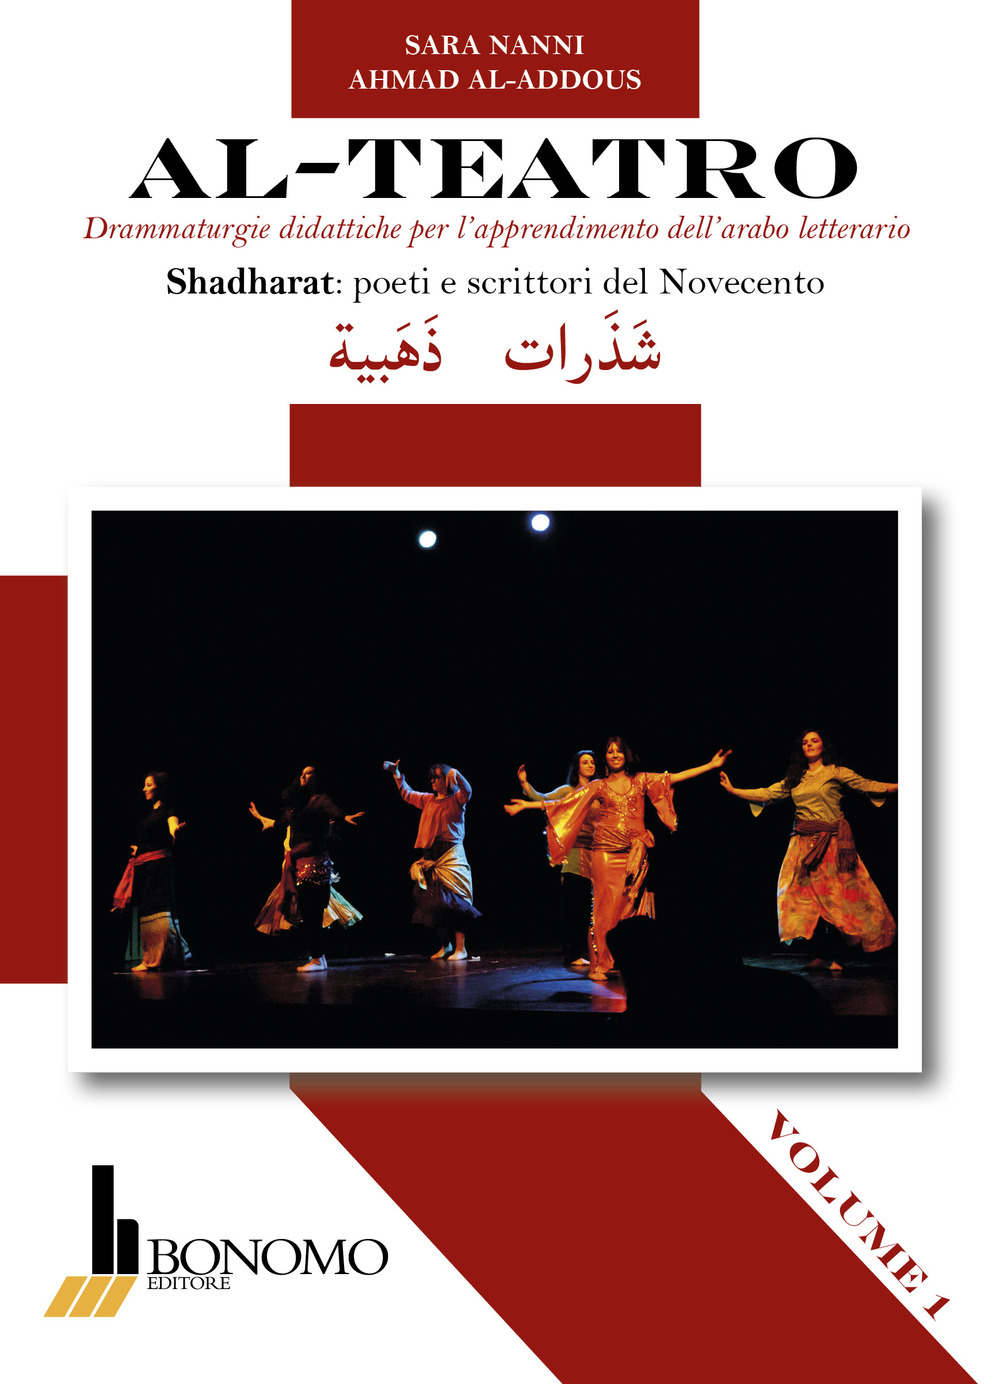 Al-teatro. Drammaturgie didattiche per l'apprendimento dell'arabo letterario. Ediz. araba e italiana. Vol. 1: Shadharata: poeti e scrittori del Novecento